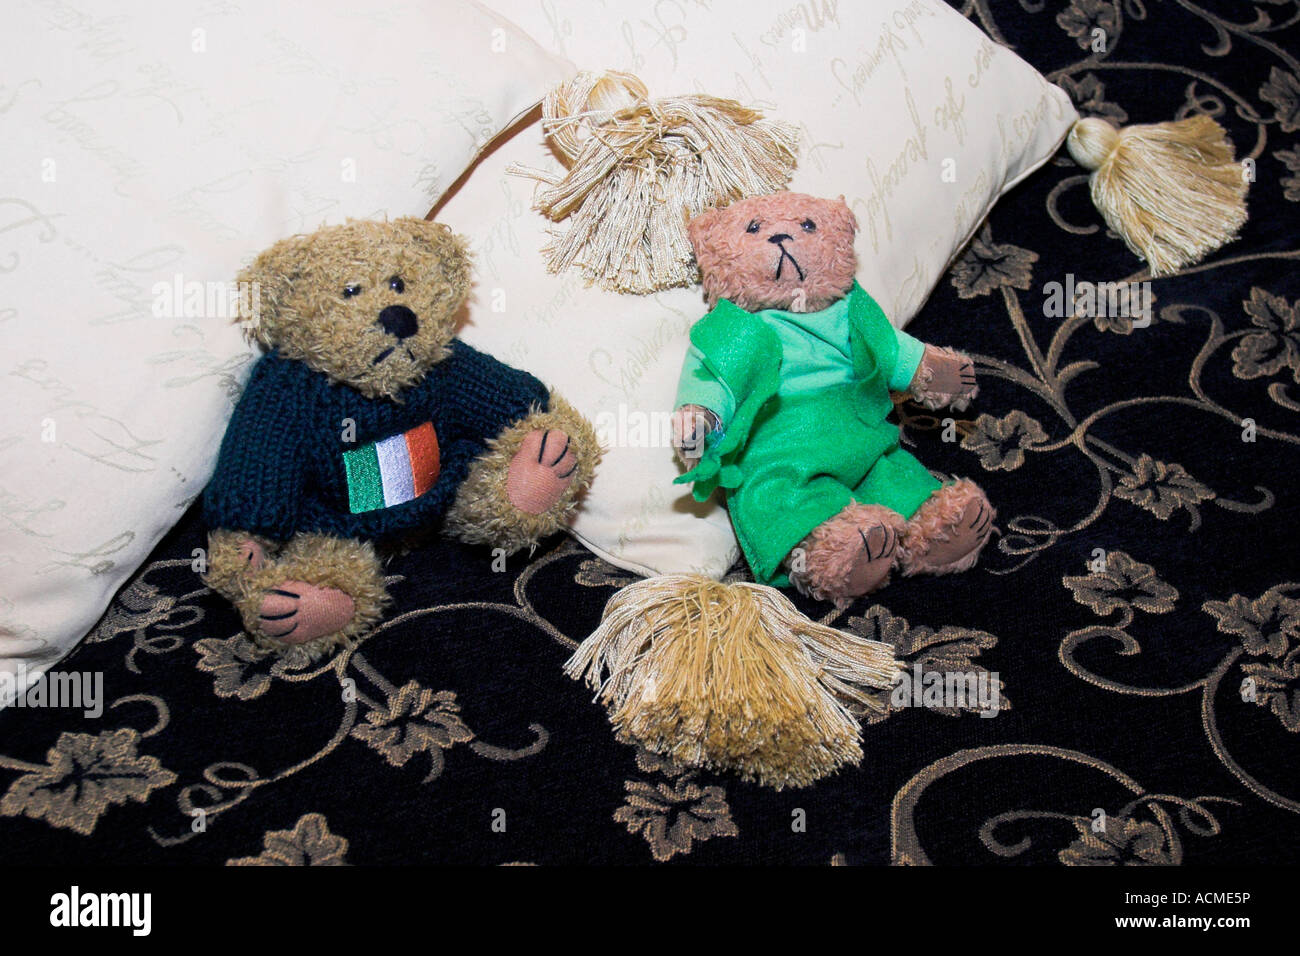 Beni y Blarni dos osos de peluche en trajes estilo irlandés Foto de stock